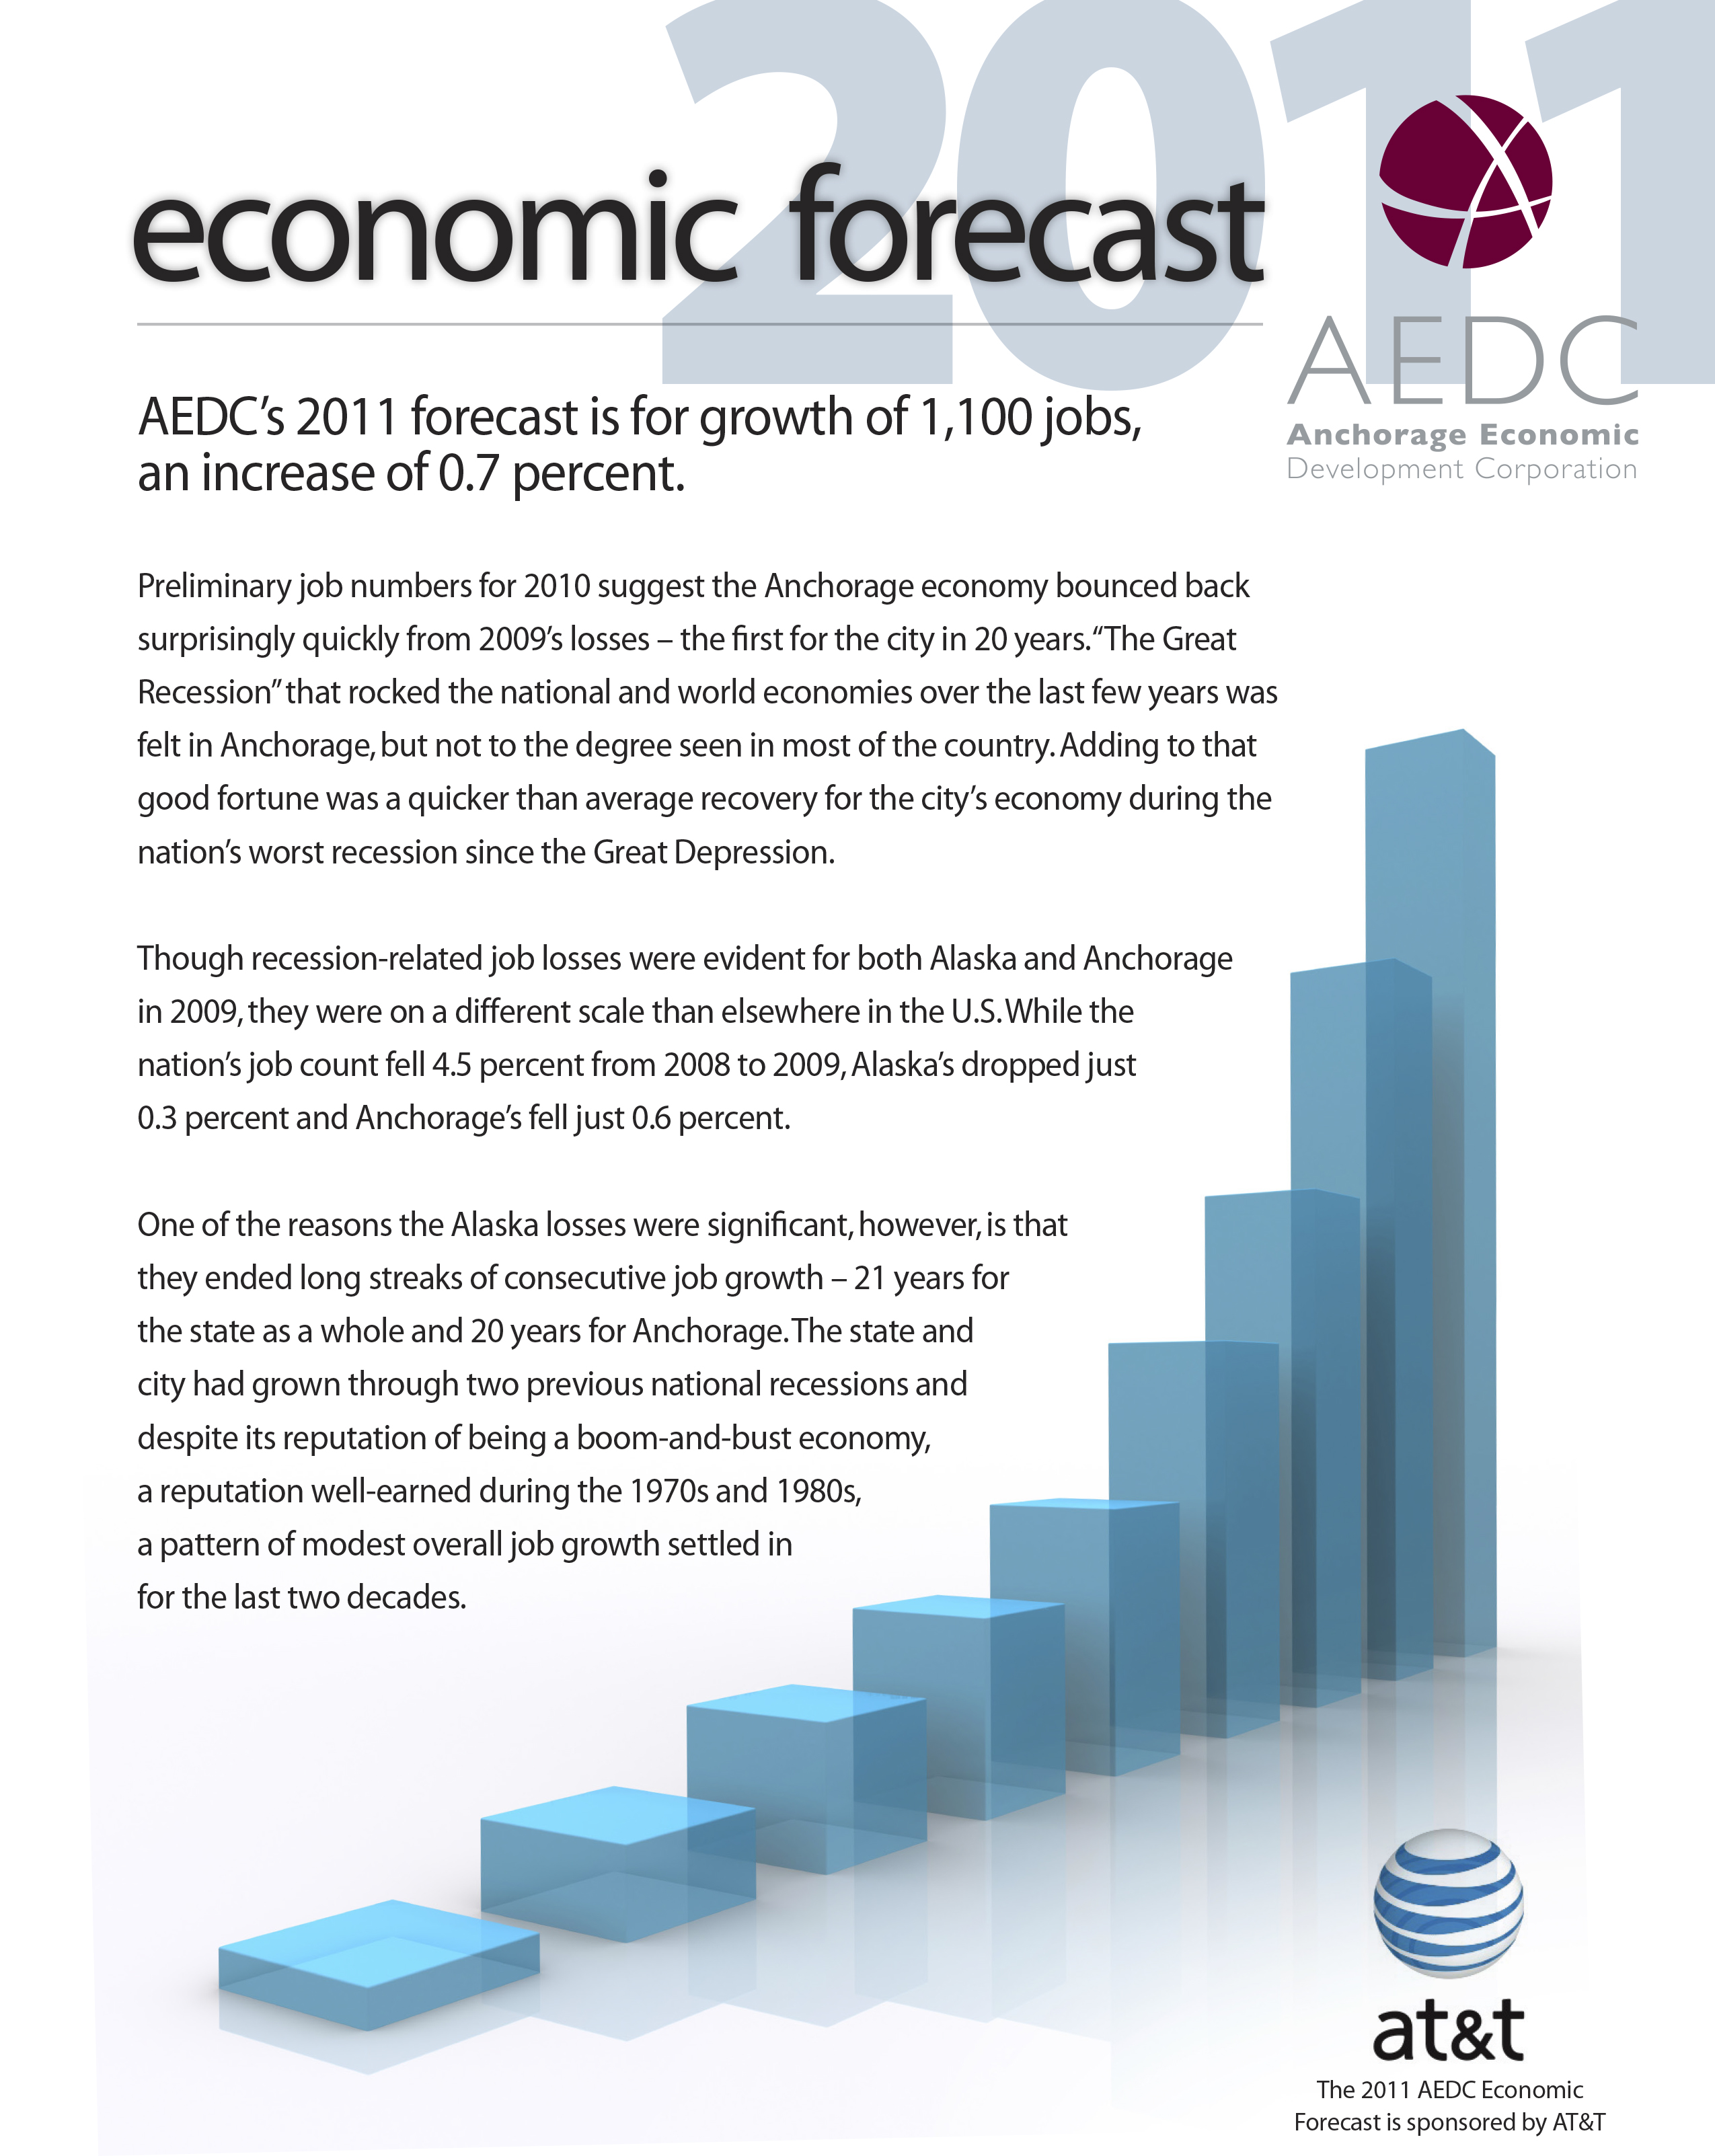 AEDC Economic Forecast Report: 2011